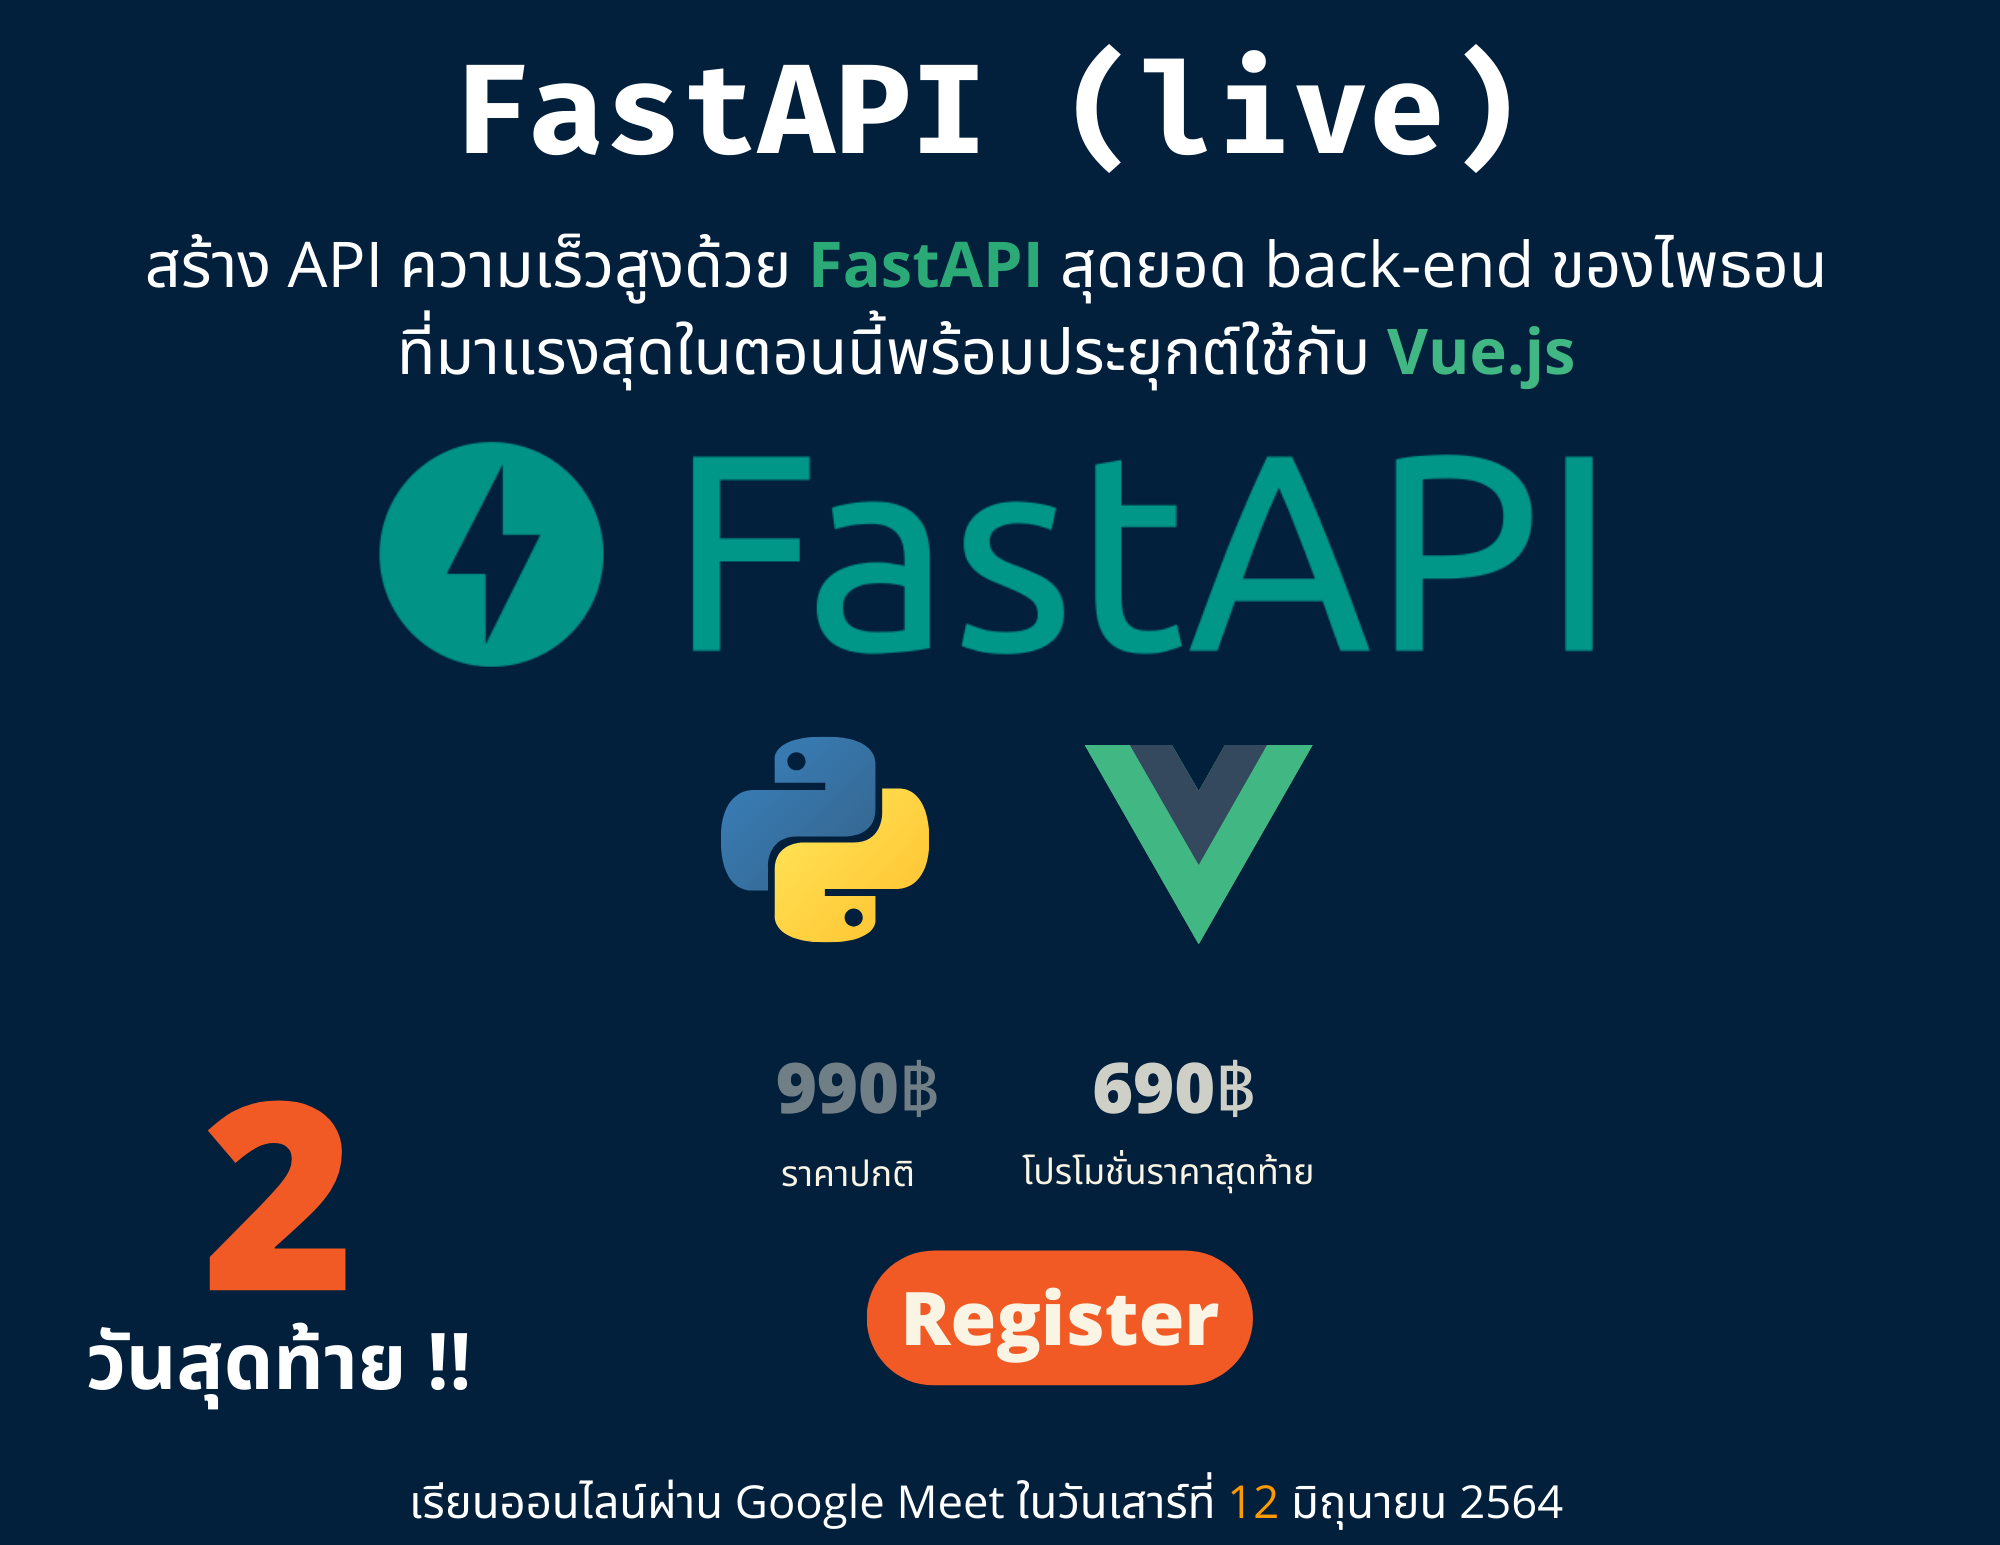 คอร์สเรียน สร้าง API ความเร็วสูงด้วย FastAPI